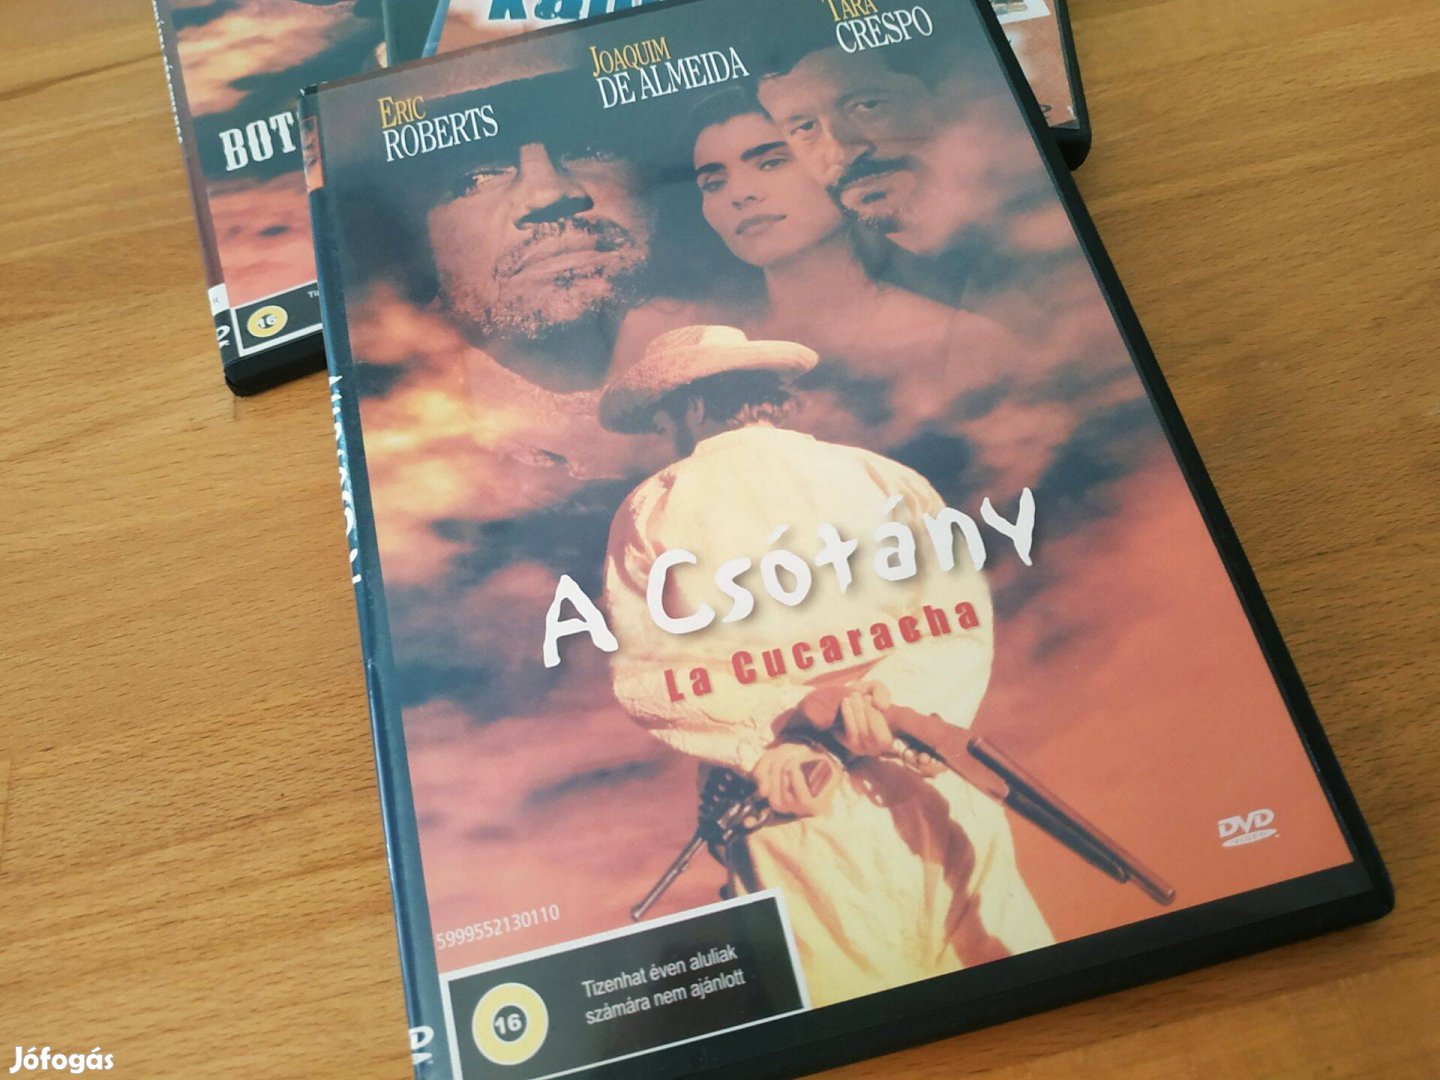 Eric Roberts - A csótány - La Cucaracha (amerikai thriller, 95p) DVD